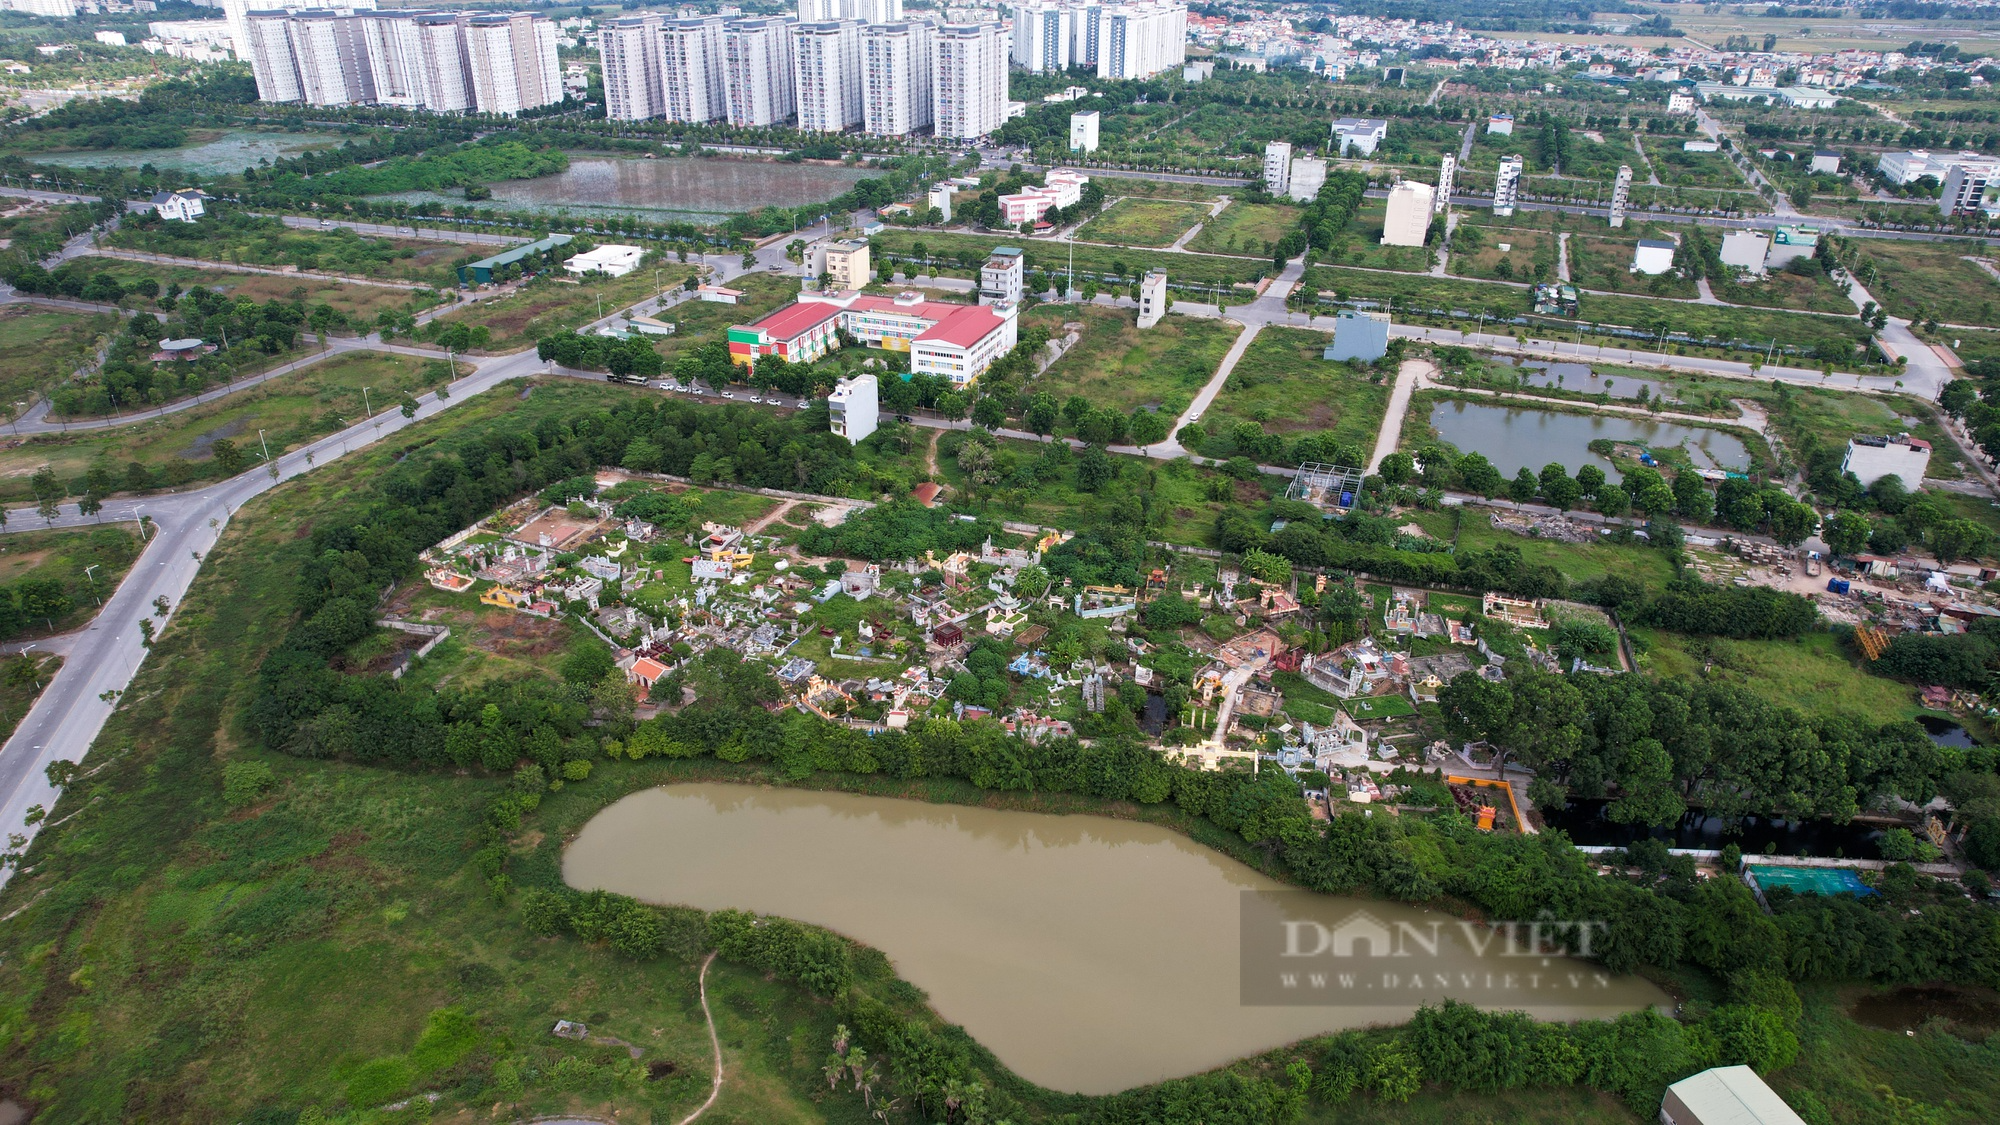 Hình ảnh trạm cấp nước Thanh Hà bị người dân phản đối vì gần nghĩa trang và mương ô nhiễm - Ảnh 8.